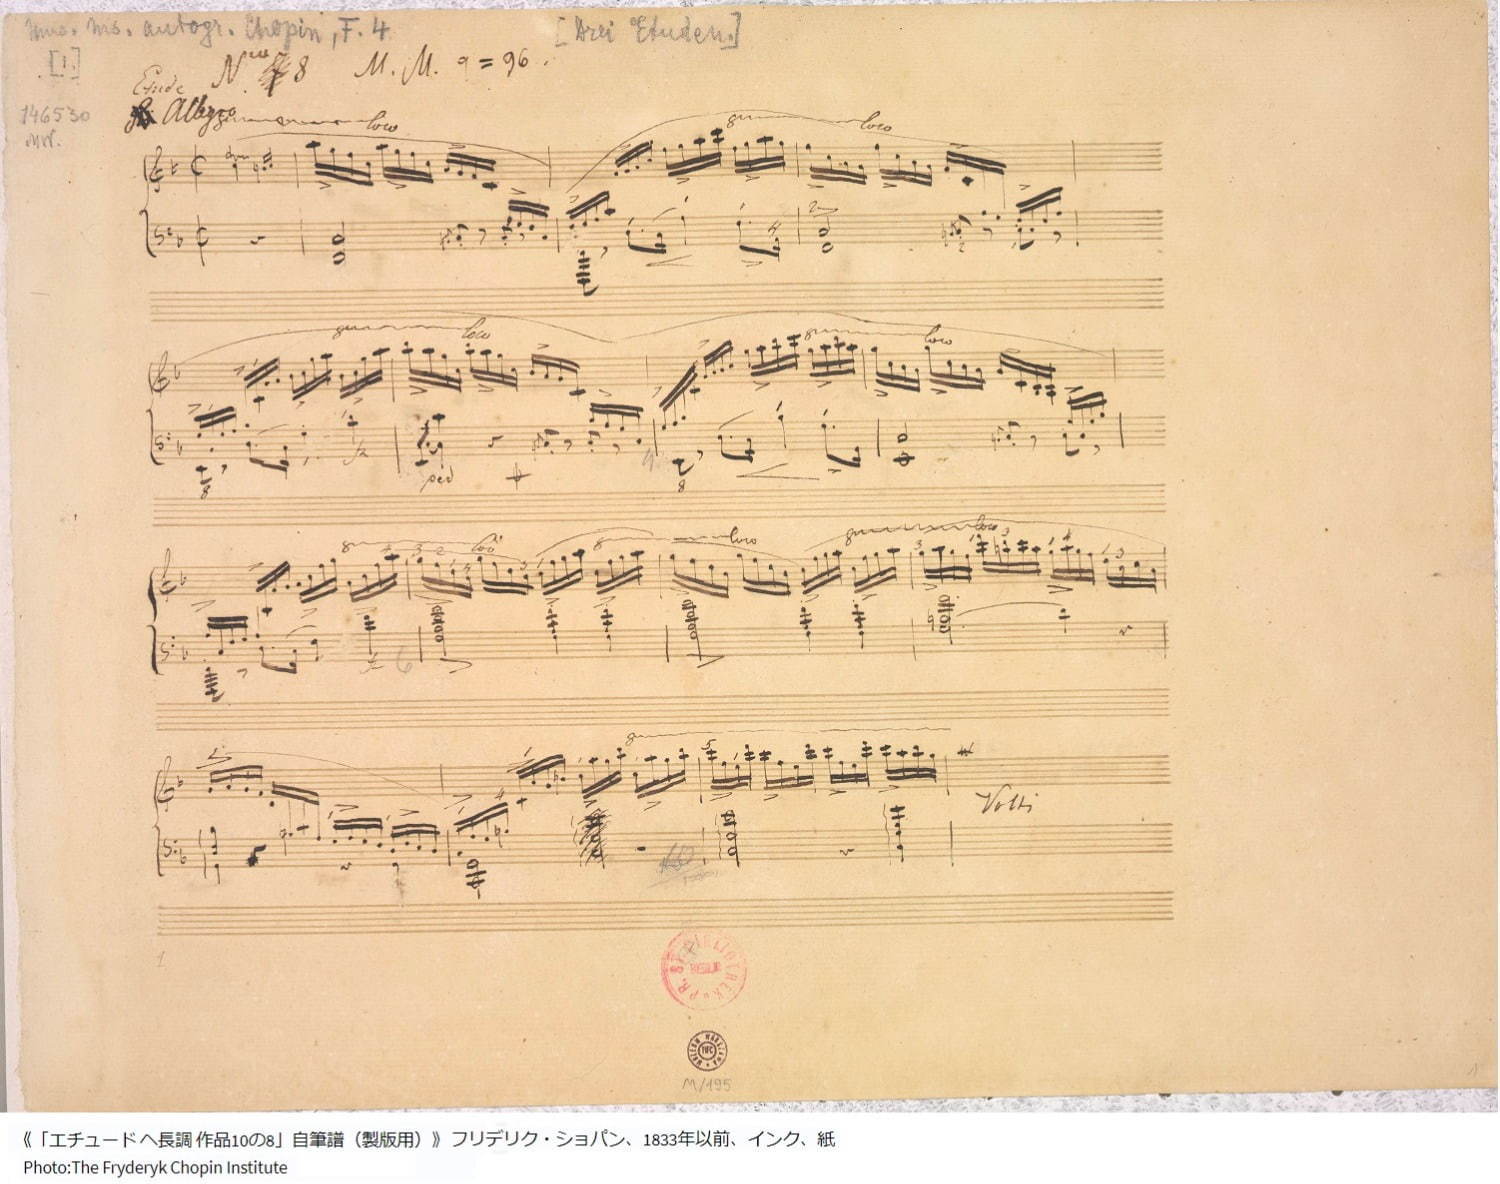 《「エチュード ヘ長調 作品10の8」自筆譜(製版用)》
フリデリク・ショパン、1833年以前、インク、紙
Photo:The Fryderyk Chopin Institute